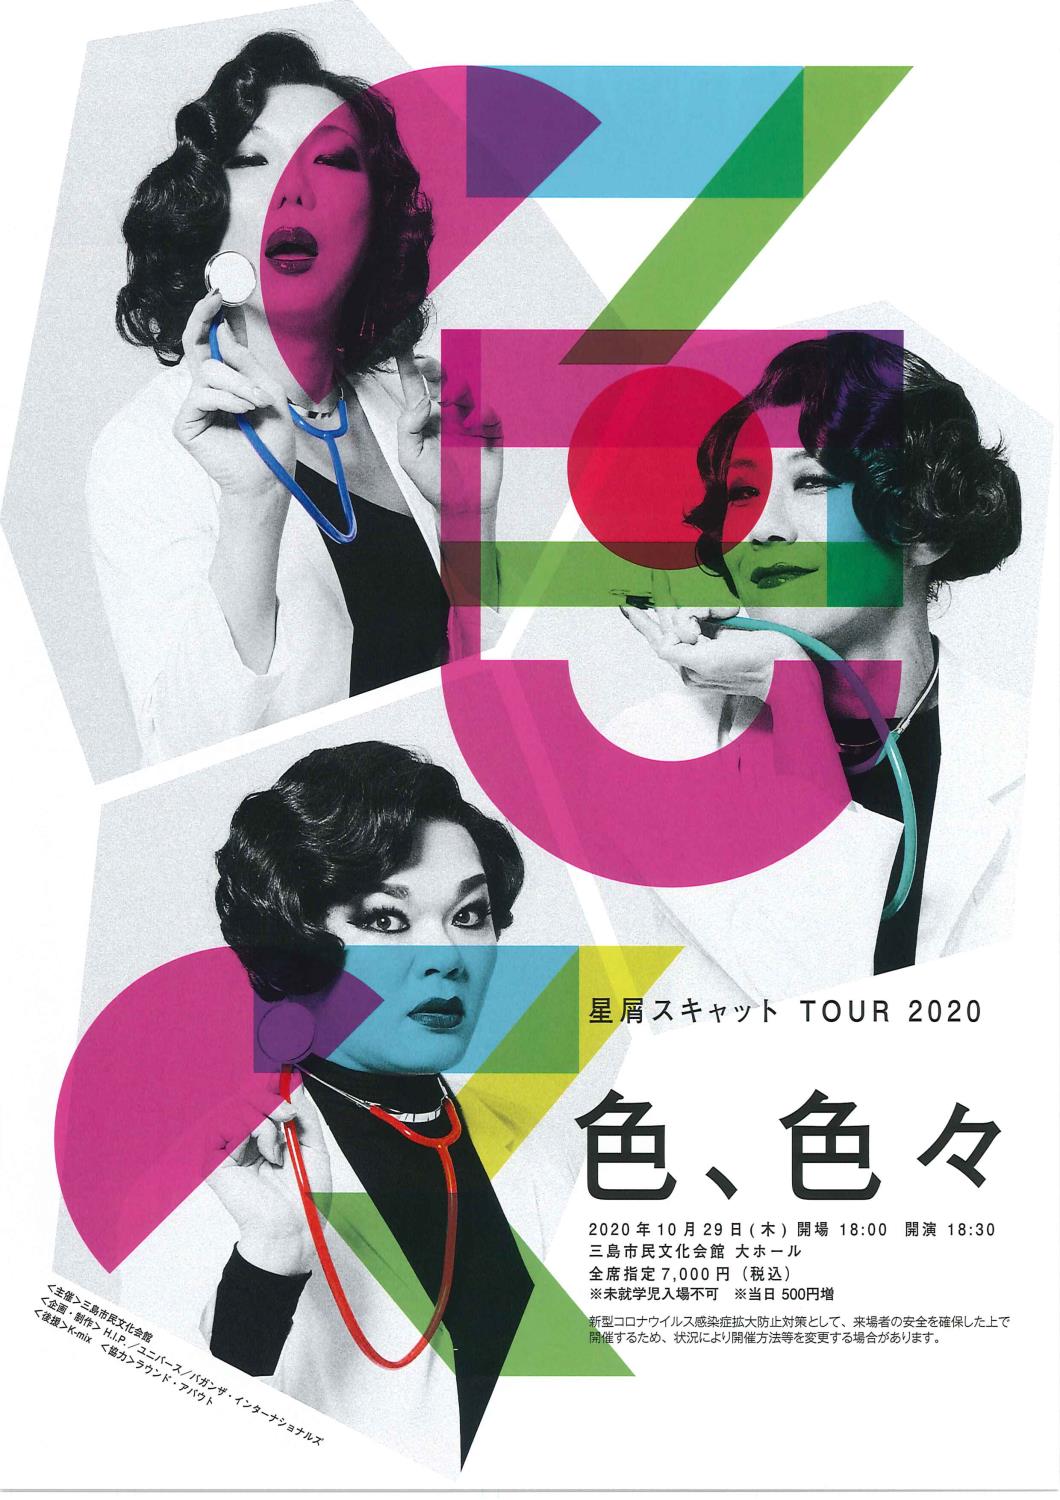 摜FXLbg TOUR 2020 wFAFXx̓dq`V摜@y[WɃ`VẽeLXg܂B